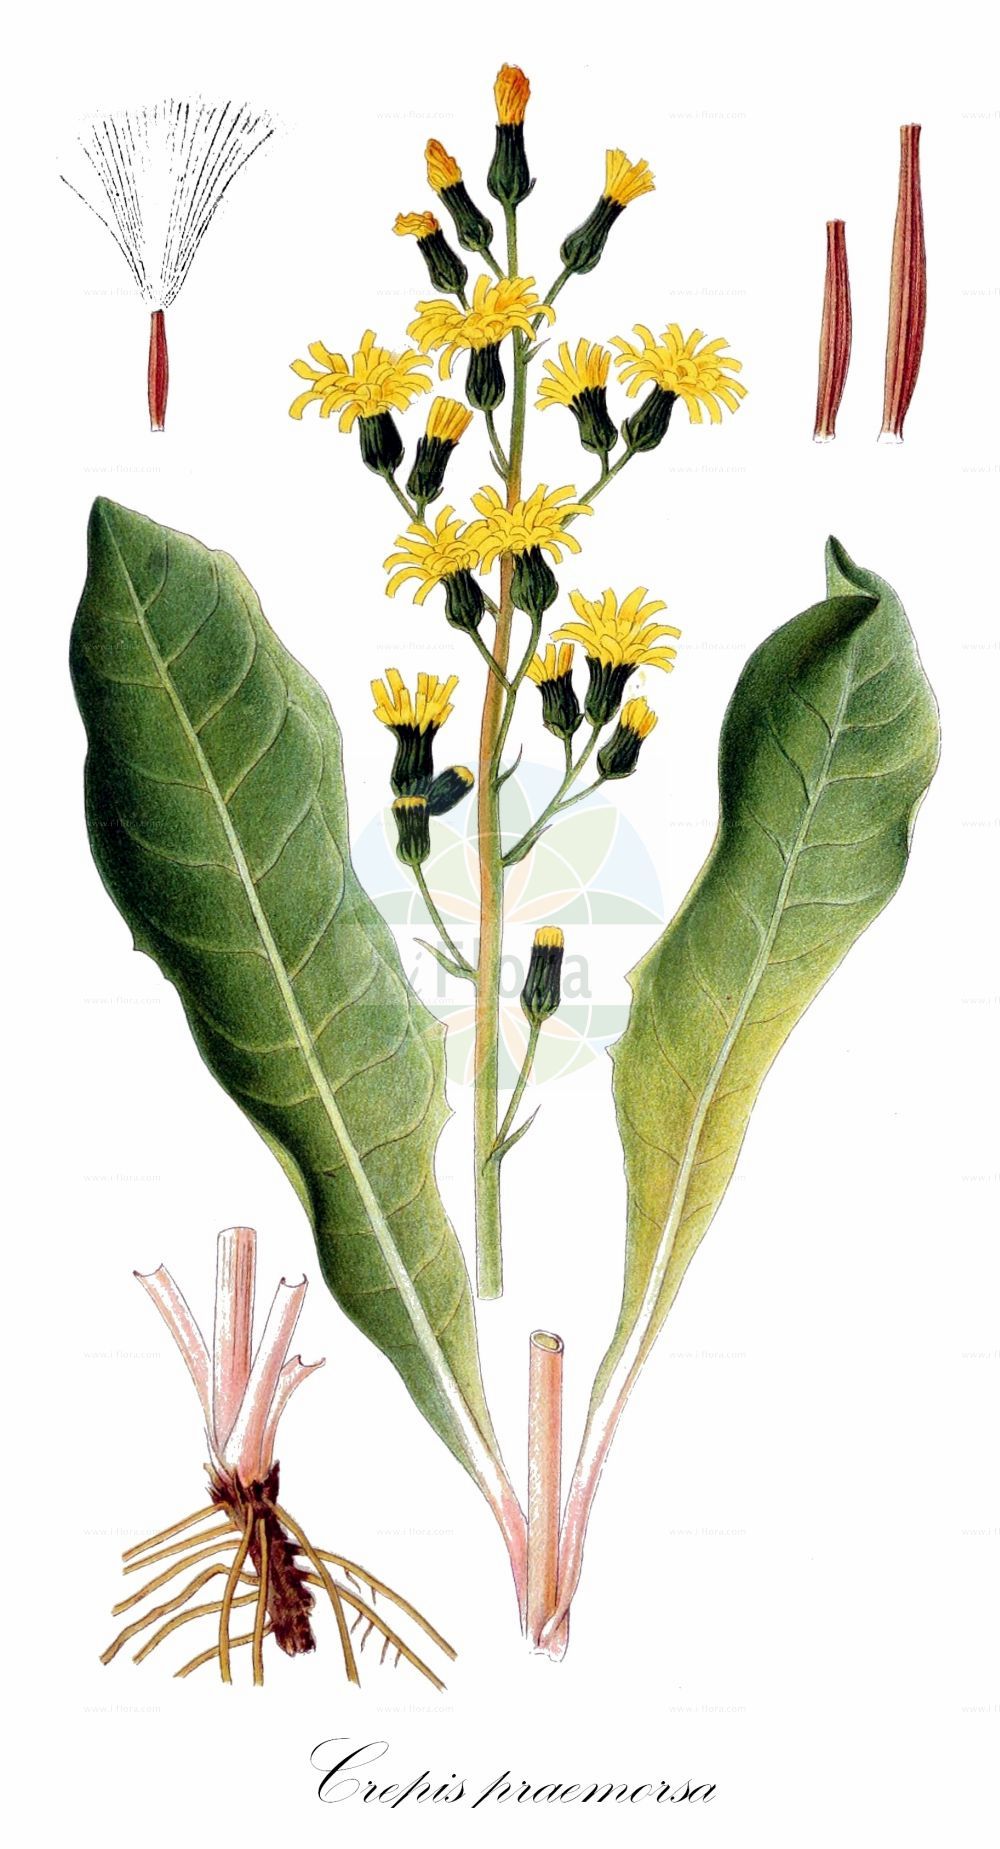 Historische Abbildung von Crepis praemorsa (Abgebissener Pippau - Leafless Hawk's-beard). Das Bild zeigt Blatt, Bluete, Frucht und Same. ---- Historical Drawing of Crepis praemorsa (Abgebissener Pippau - Leafless Hawk's-beard). The image is showing leaf, flower, fruit and seed.(Crepis praemorsa,Abgebissener Pippau,Leafless Hawk's-beard,Crepis praemorsa,Hieracium praemorsum,Abgebissener Pippau,Abbiss-Pippau,Leafless Hawk's-beard,Pink Hawksbeard,Crepis,Pippau,Hawk's-beard,Asteraceae,Korbblütengewächse,Daisy family,Blatt,Bluete,Frucht,Same,leaf,flower,fruit,seed,Lindman (1901-1905))